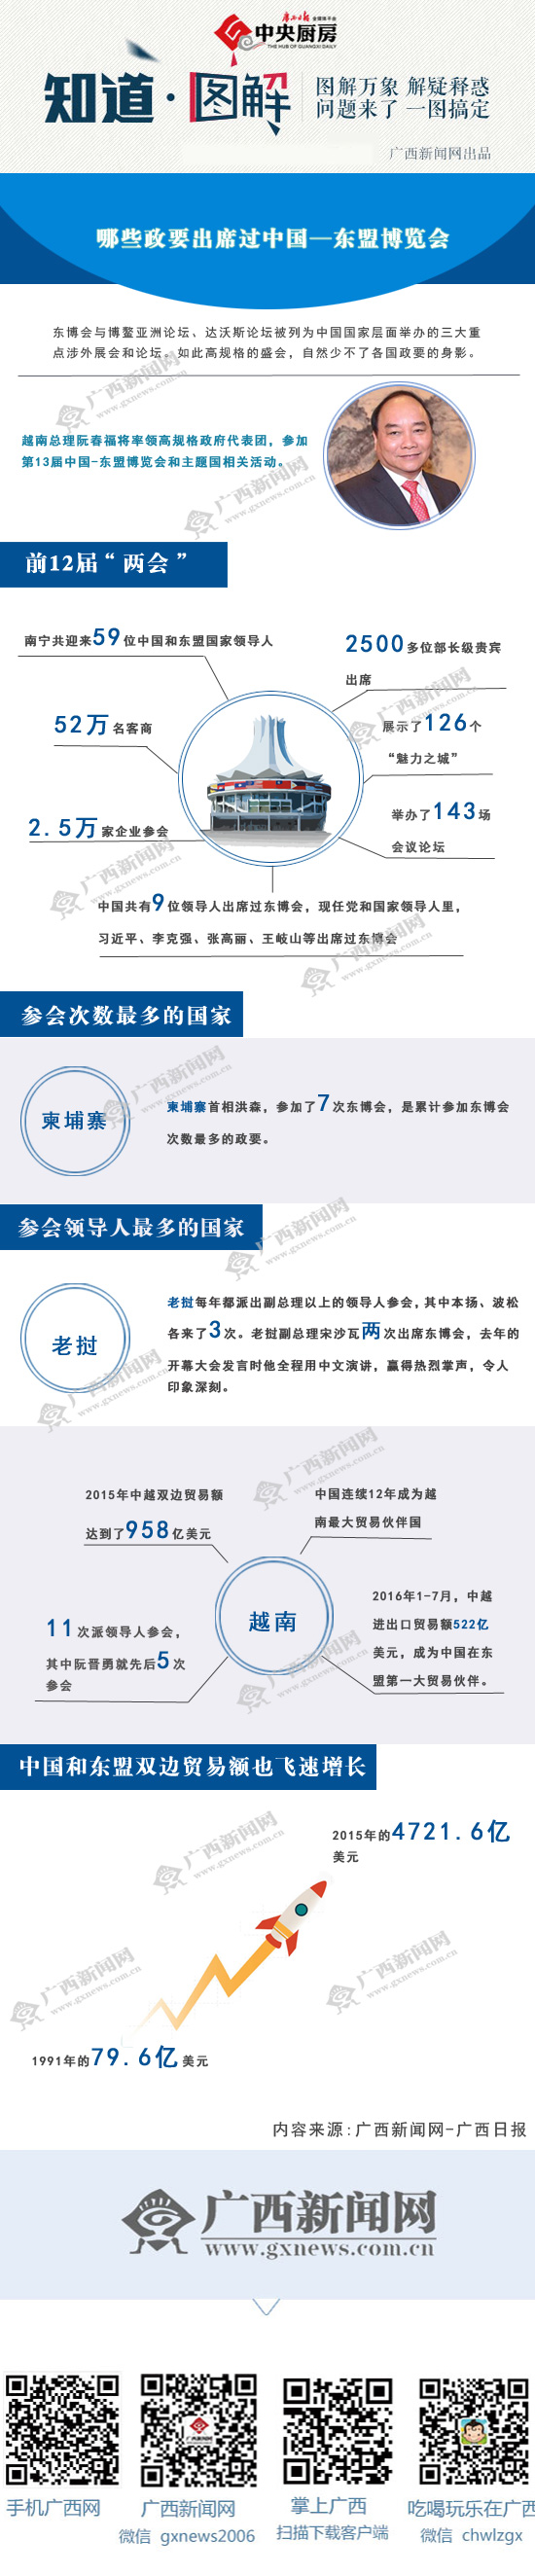 【知道·图解】哪些政要出席过中国—东盟博览会